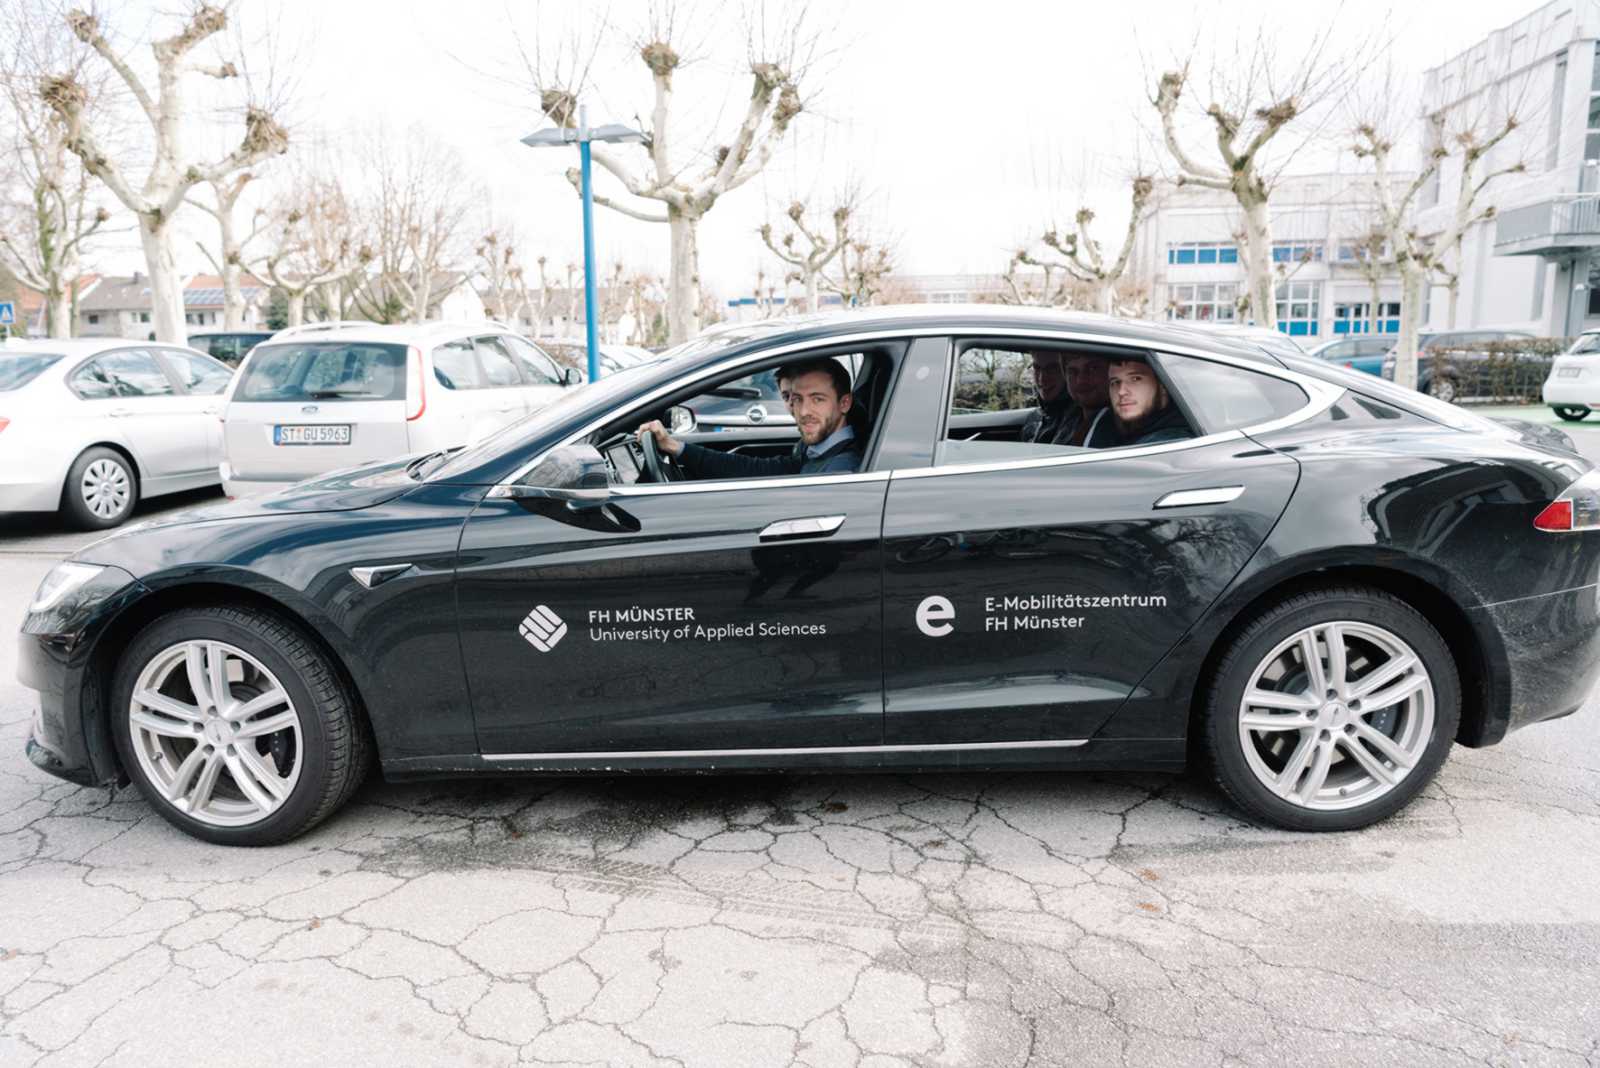 Heiß begehrt war die Fahrt im Tesla S – allerdings nur als Beifahrer. Der wissenschaftliche Mitarbeiter Klaus Russel-Wells drehte mit allen Schülern Runden im sportlichen E-Auto. (Foto: FH Münster/Maxi Krähling)